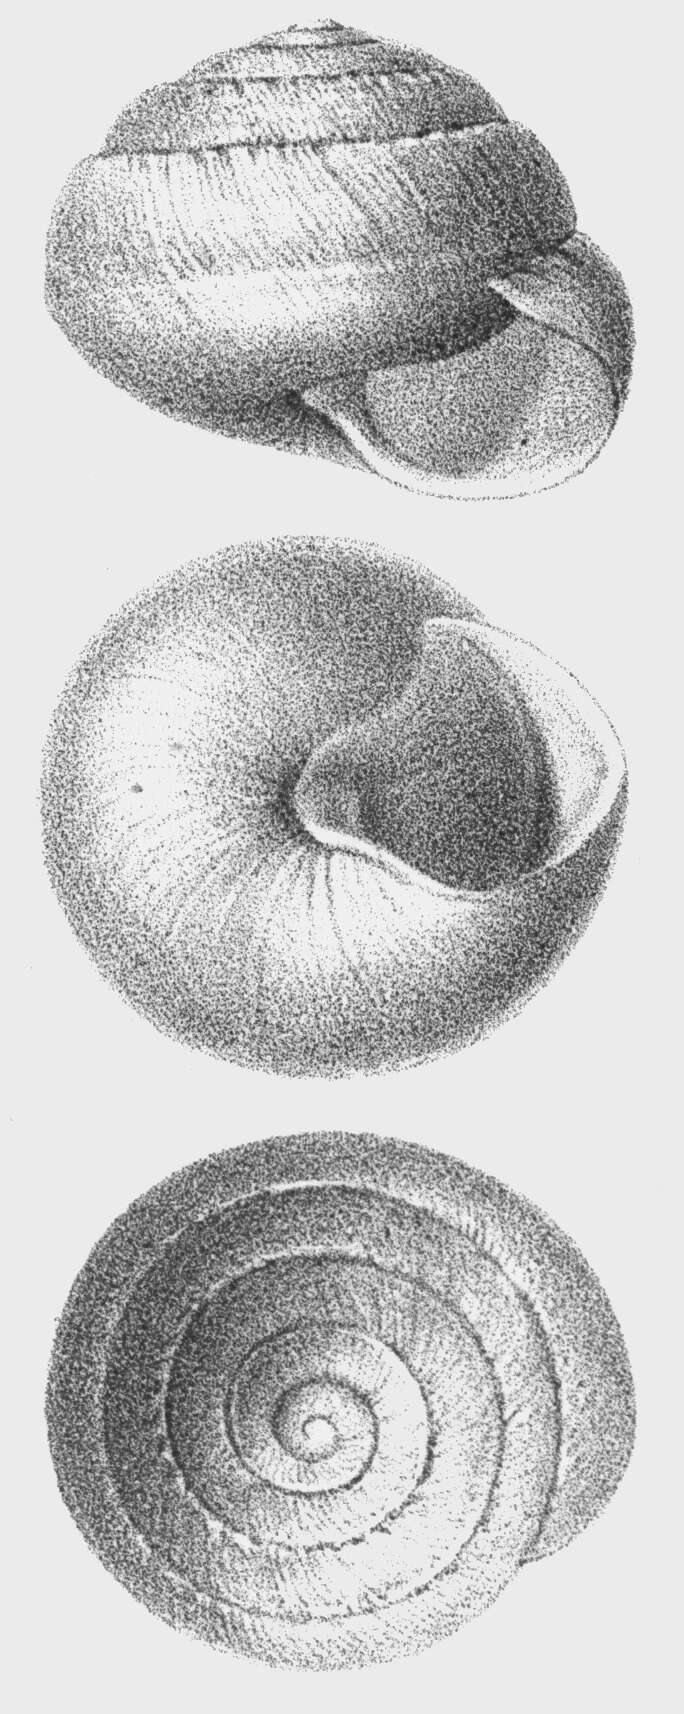 Image of Sphincterochila baetica (Rossmässler 1854)